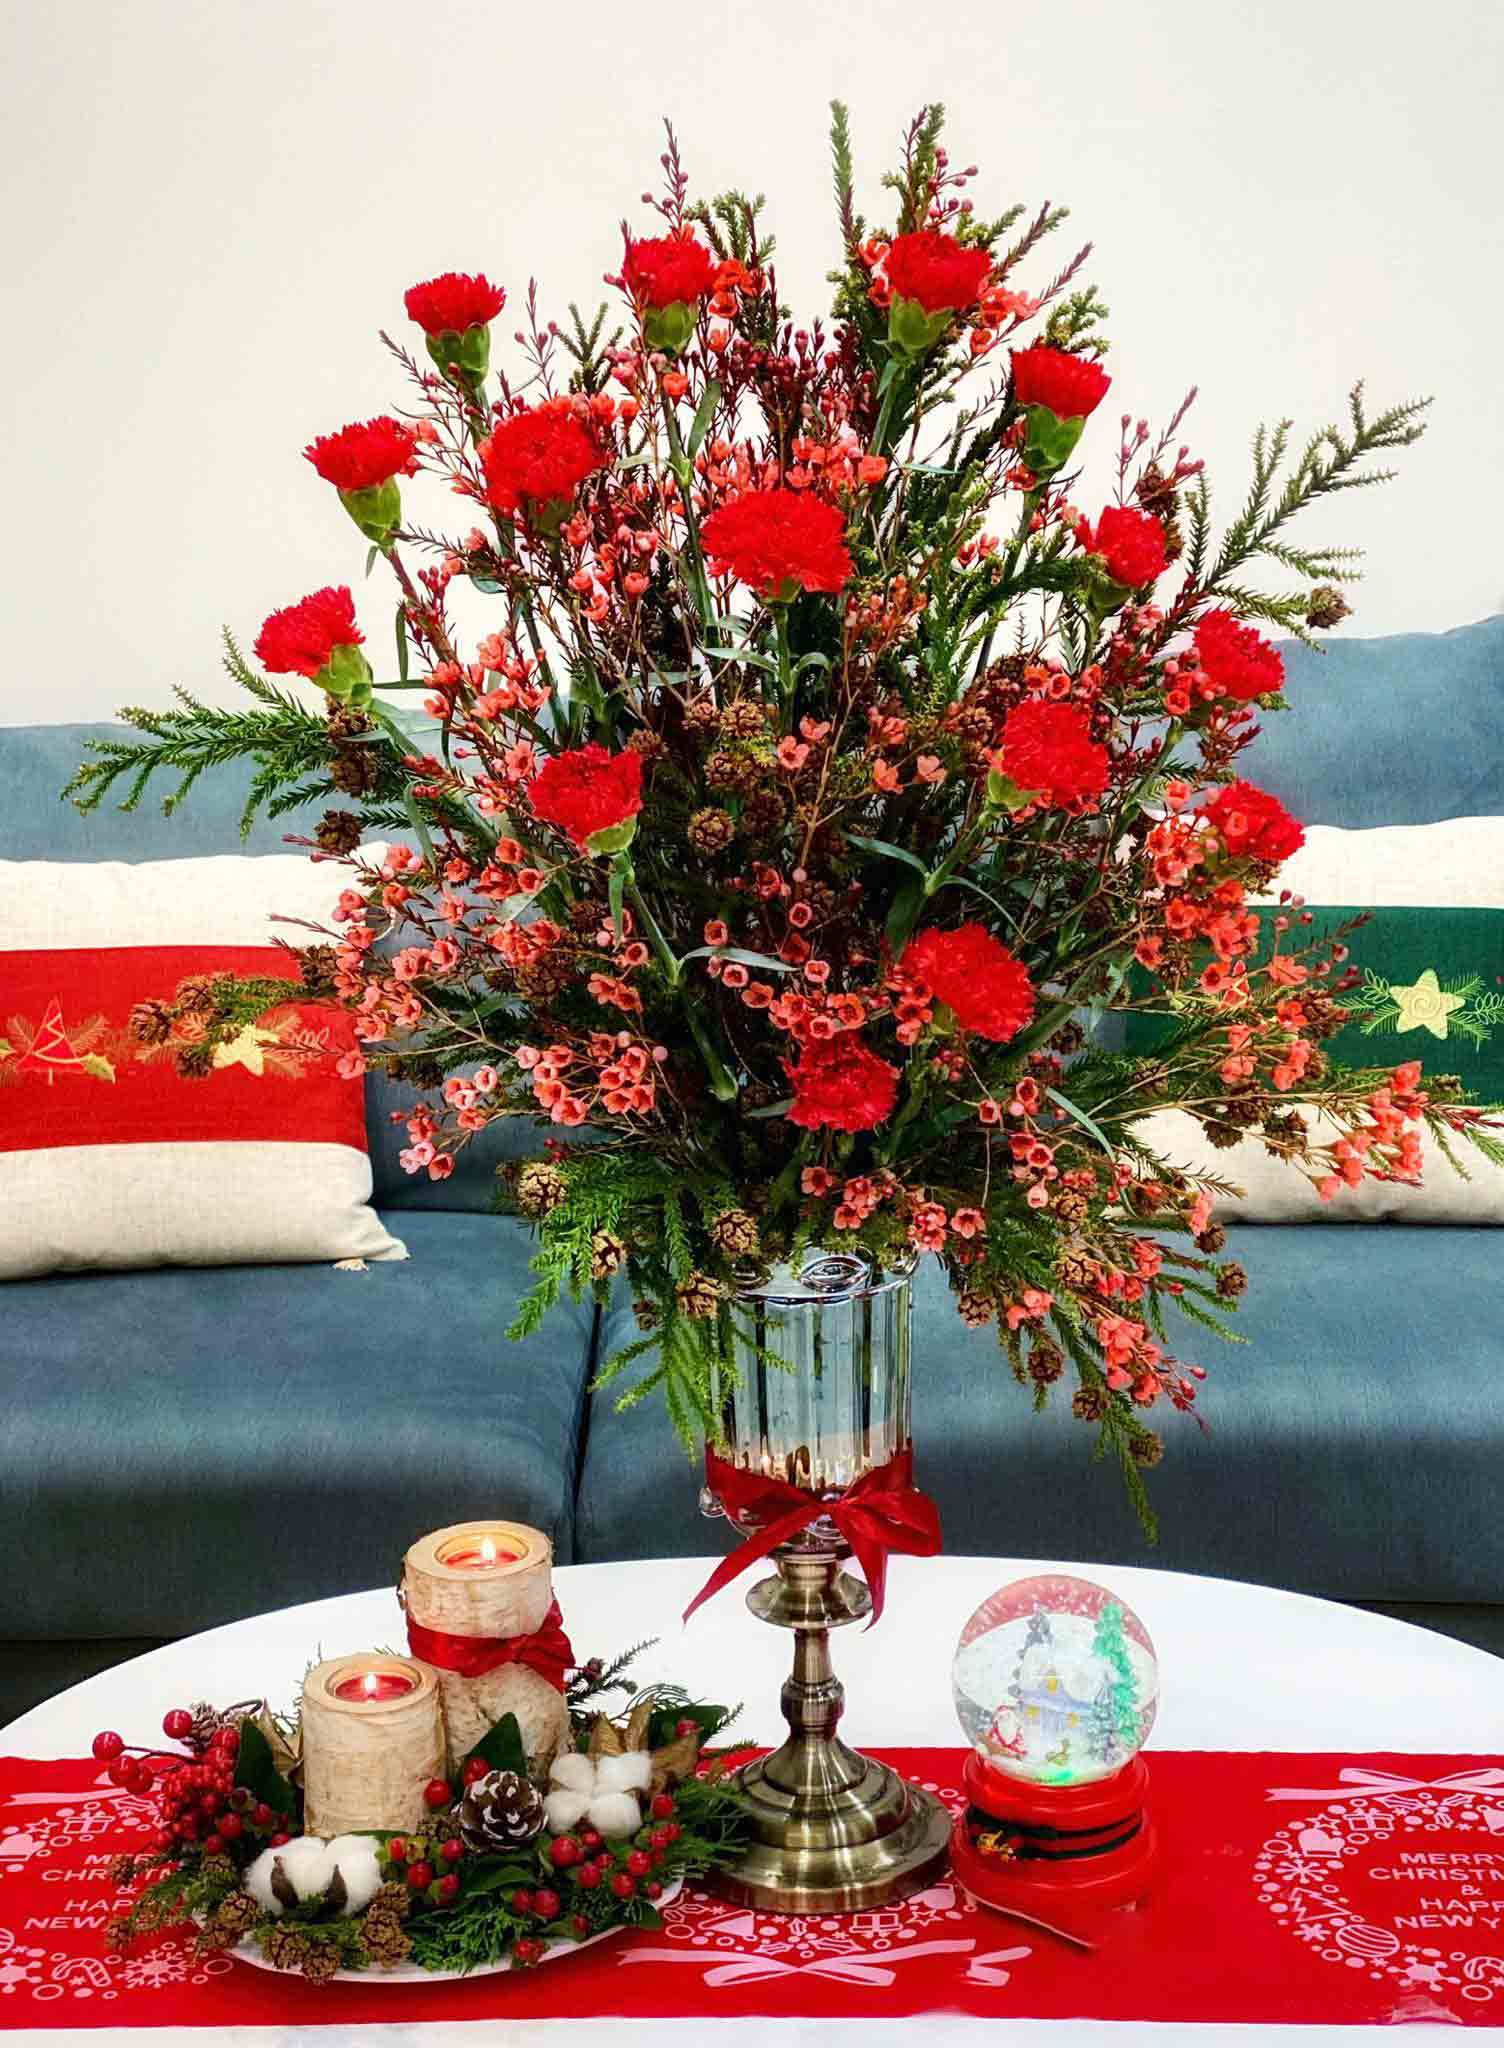 Bình hoa Giáng sinh được làm từ hoa cẩm chướng rực rỡ, đẹp mắt